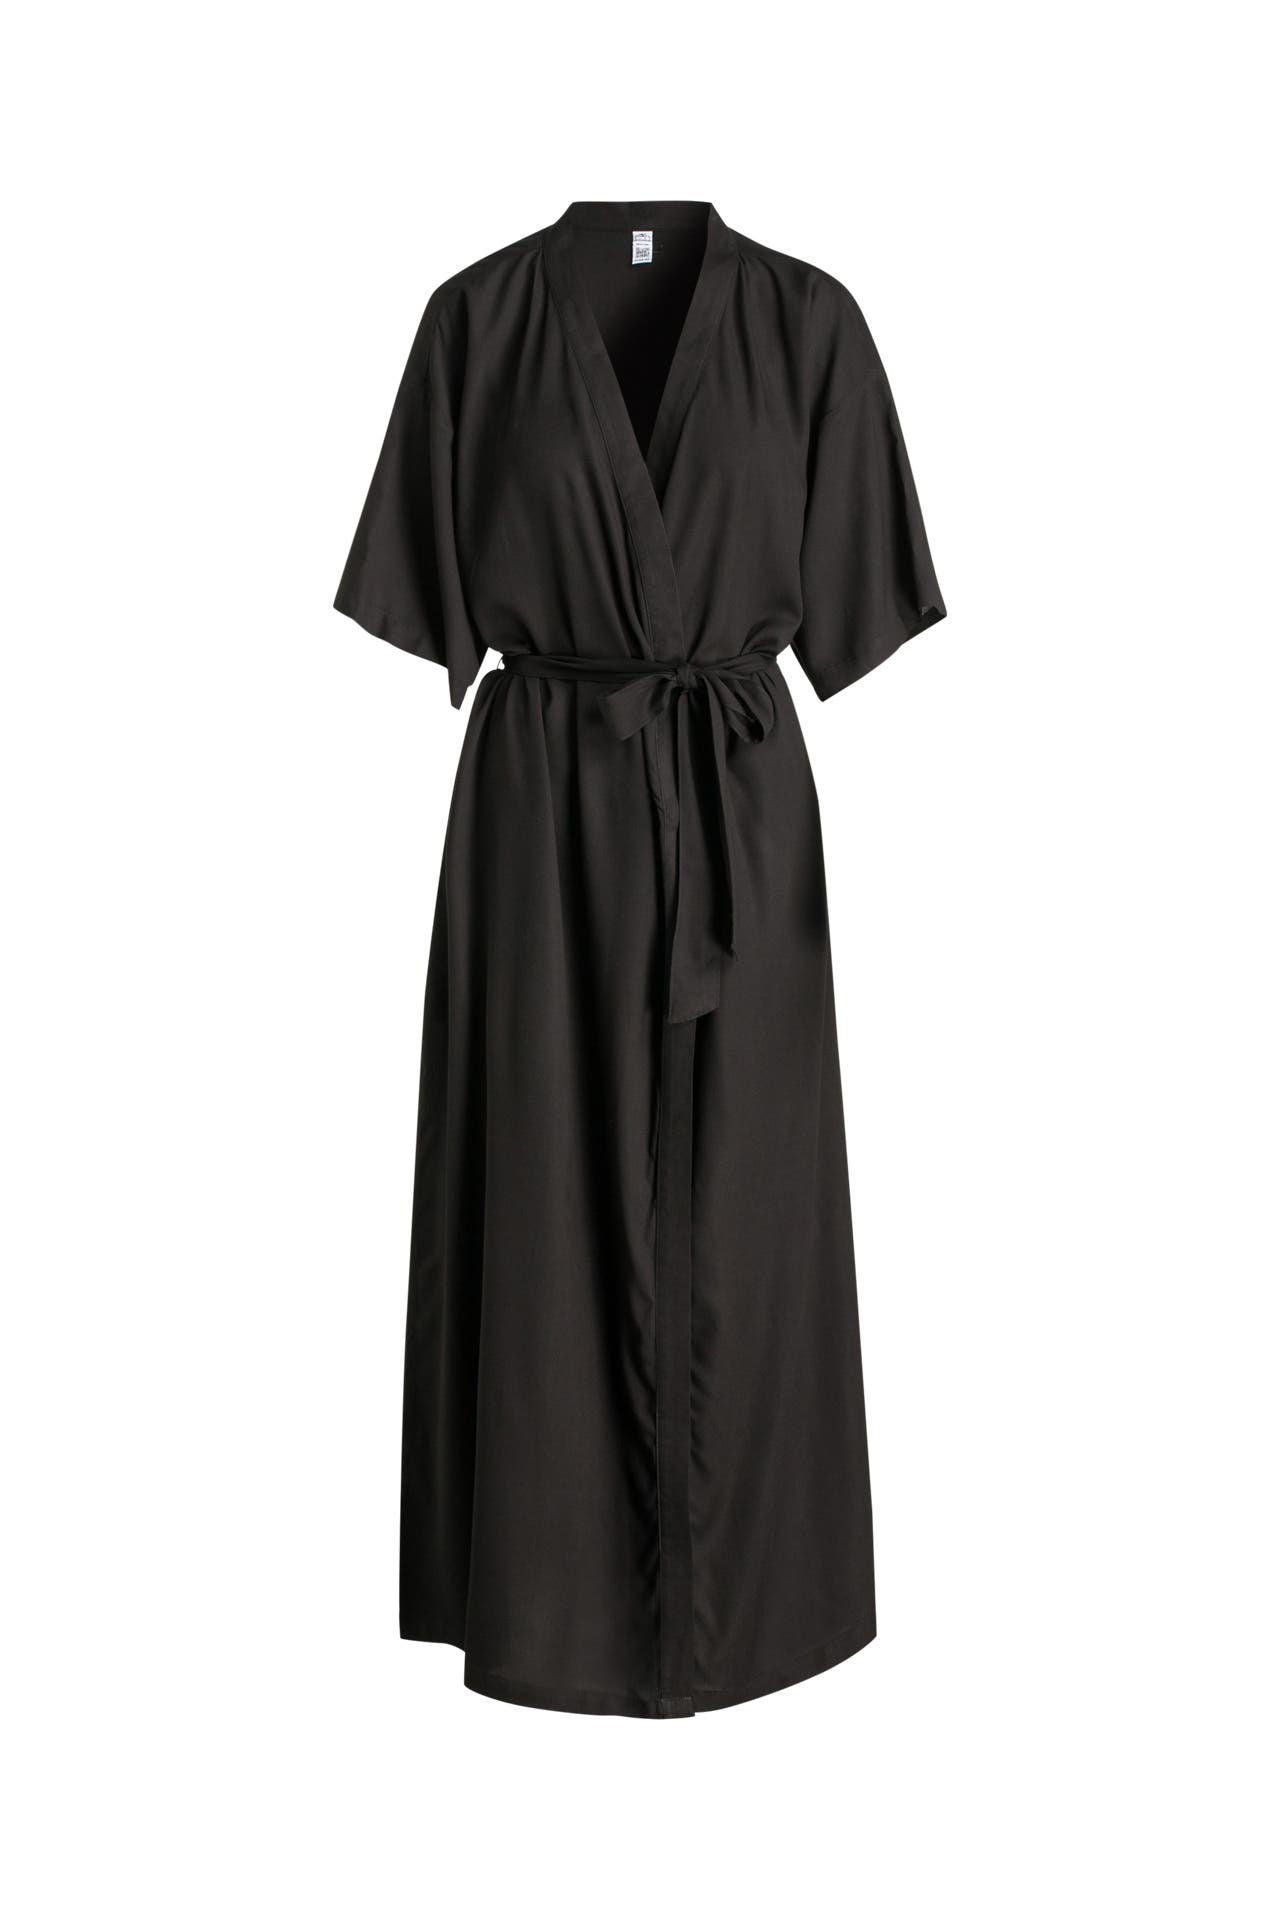 Kimono-Kleid schwarz - O'NEILL » günstig kaufen | Outletcity